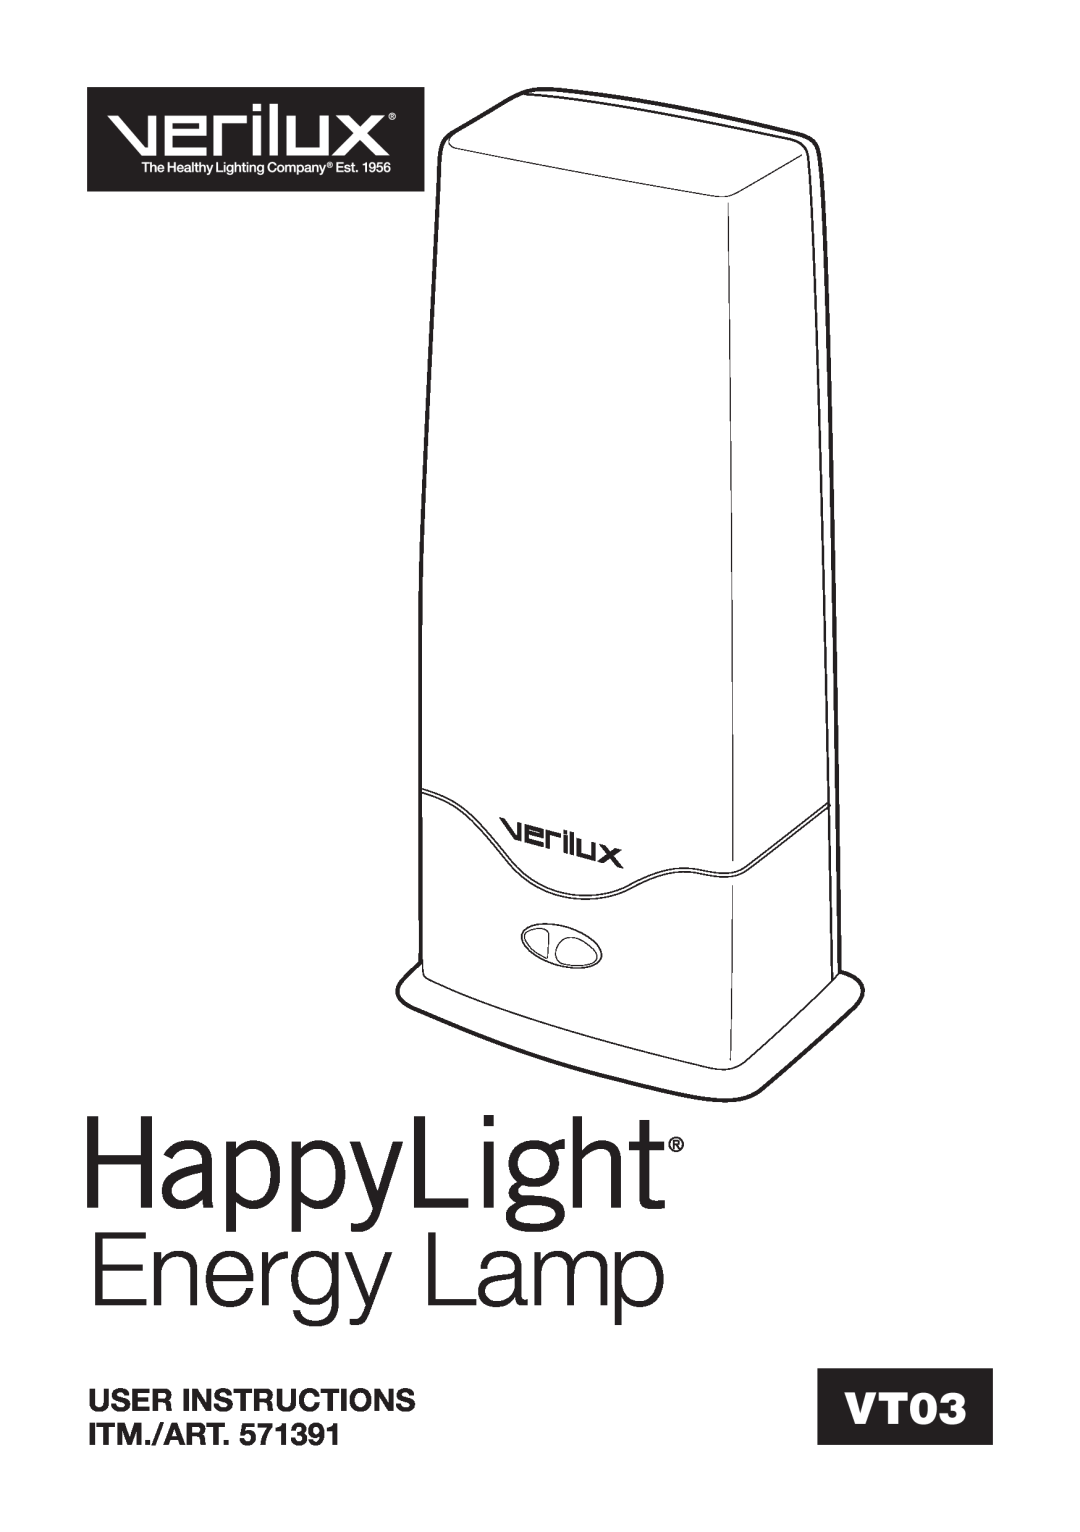 Verilux 571391 manual User Instructions, Itm./Art, Energy Lamp, VT03 